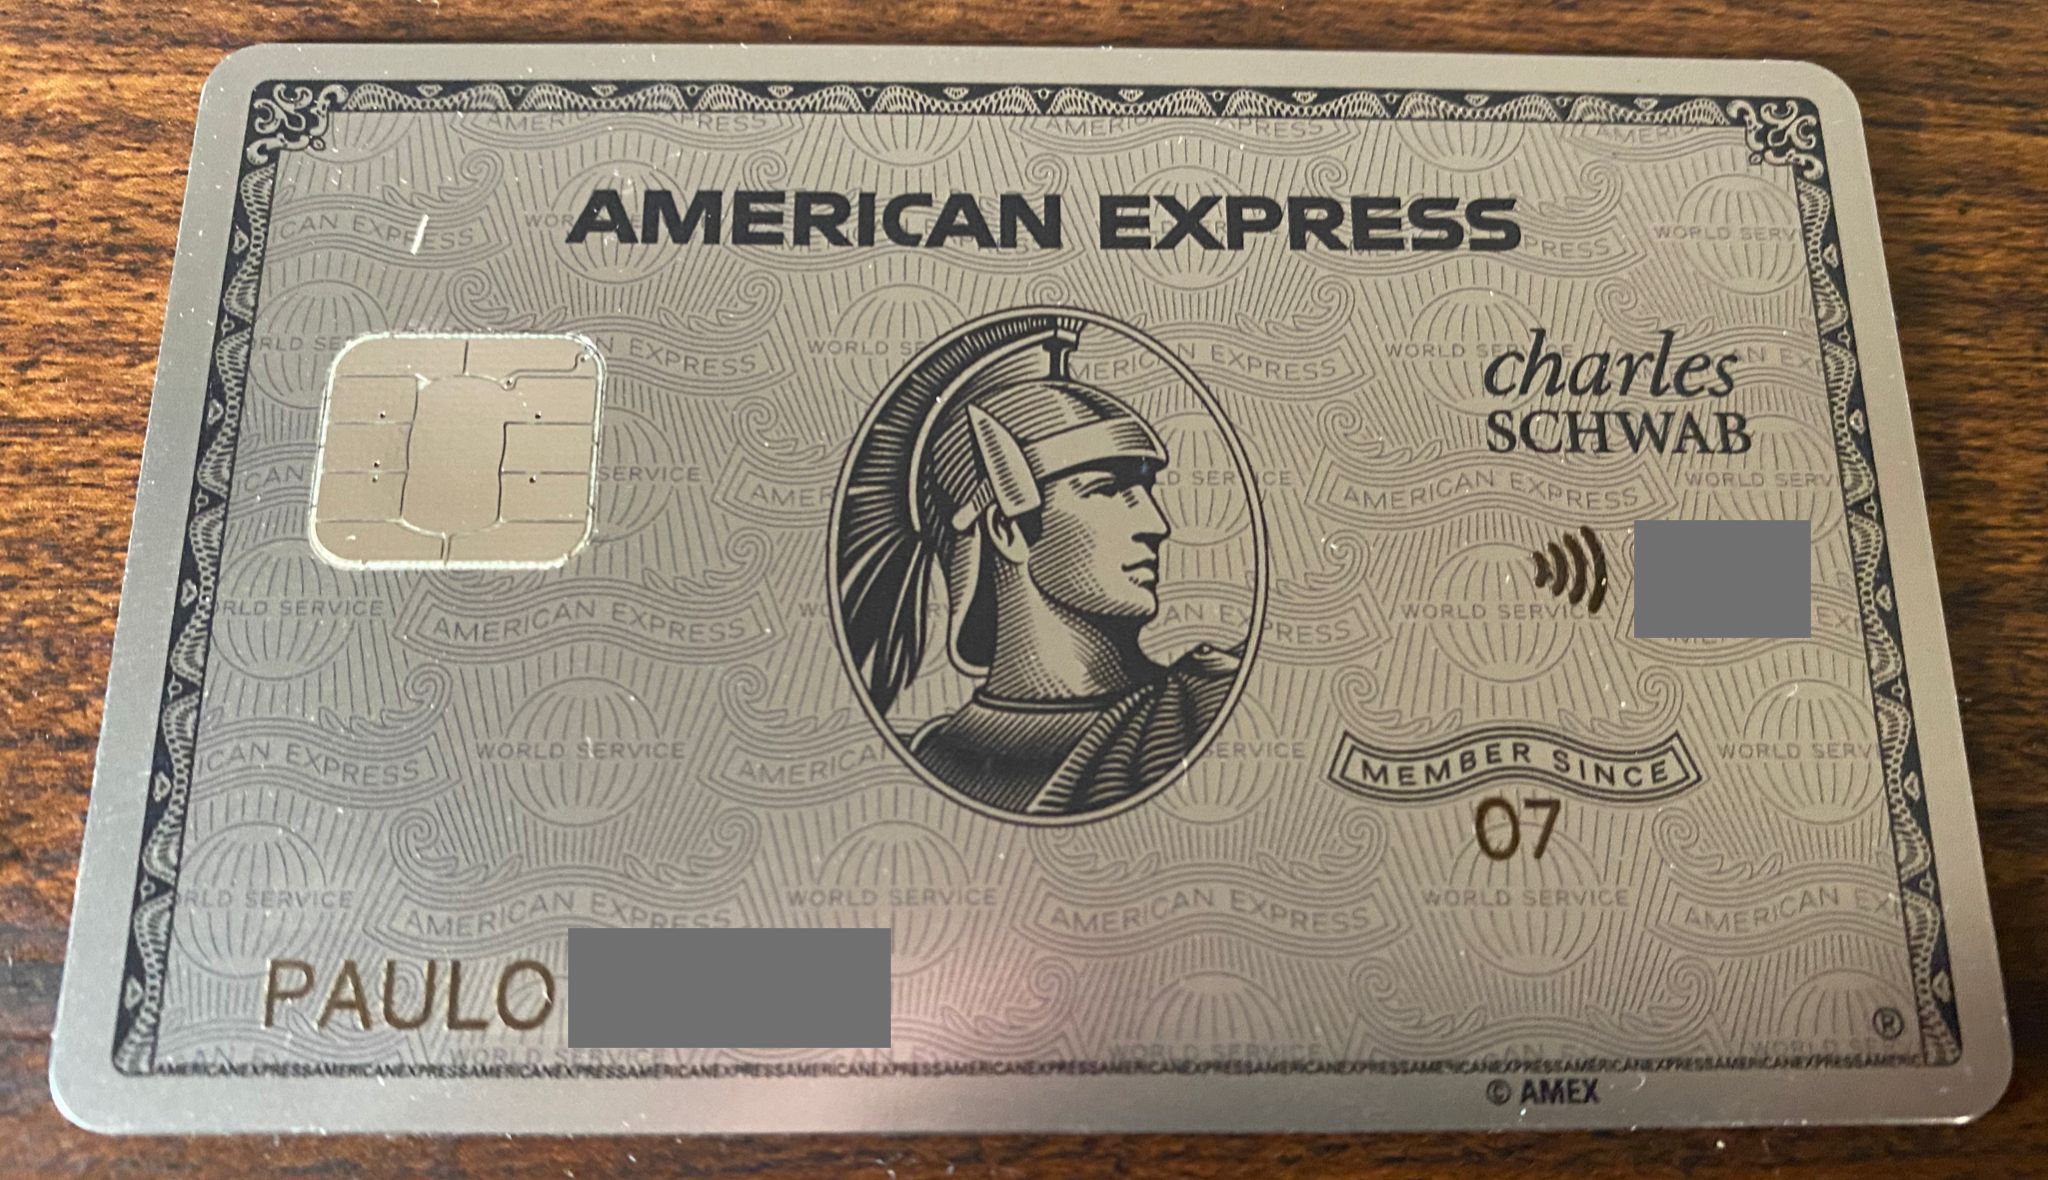 Conheça o cartão American Express Platinum do Charles Schwab